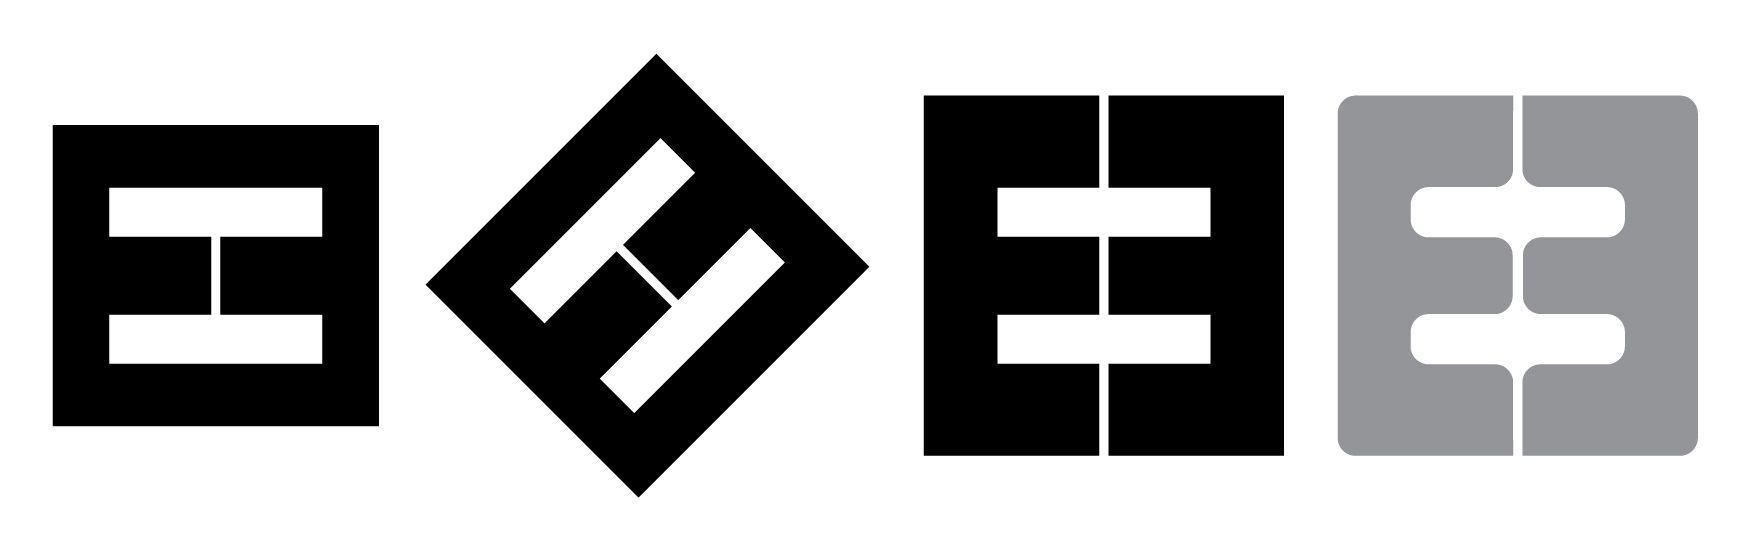 Double E Logo - logo